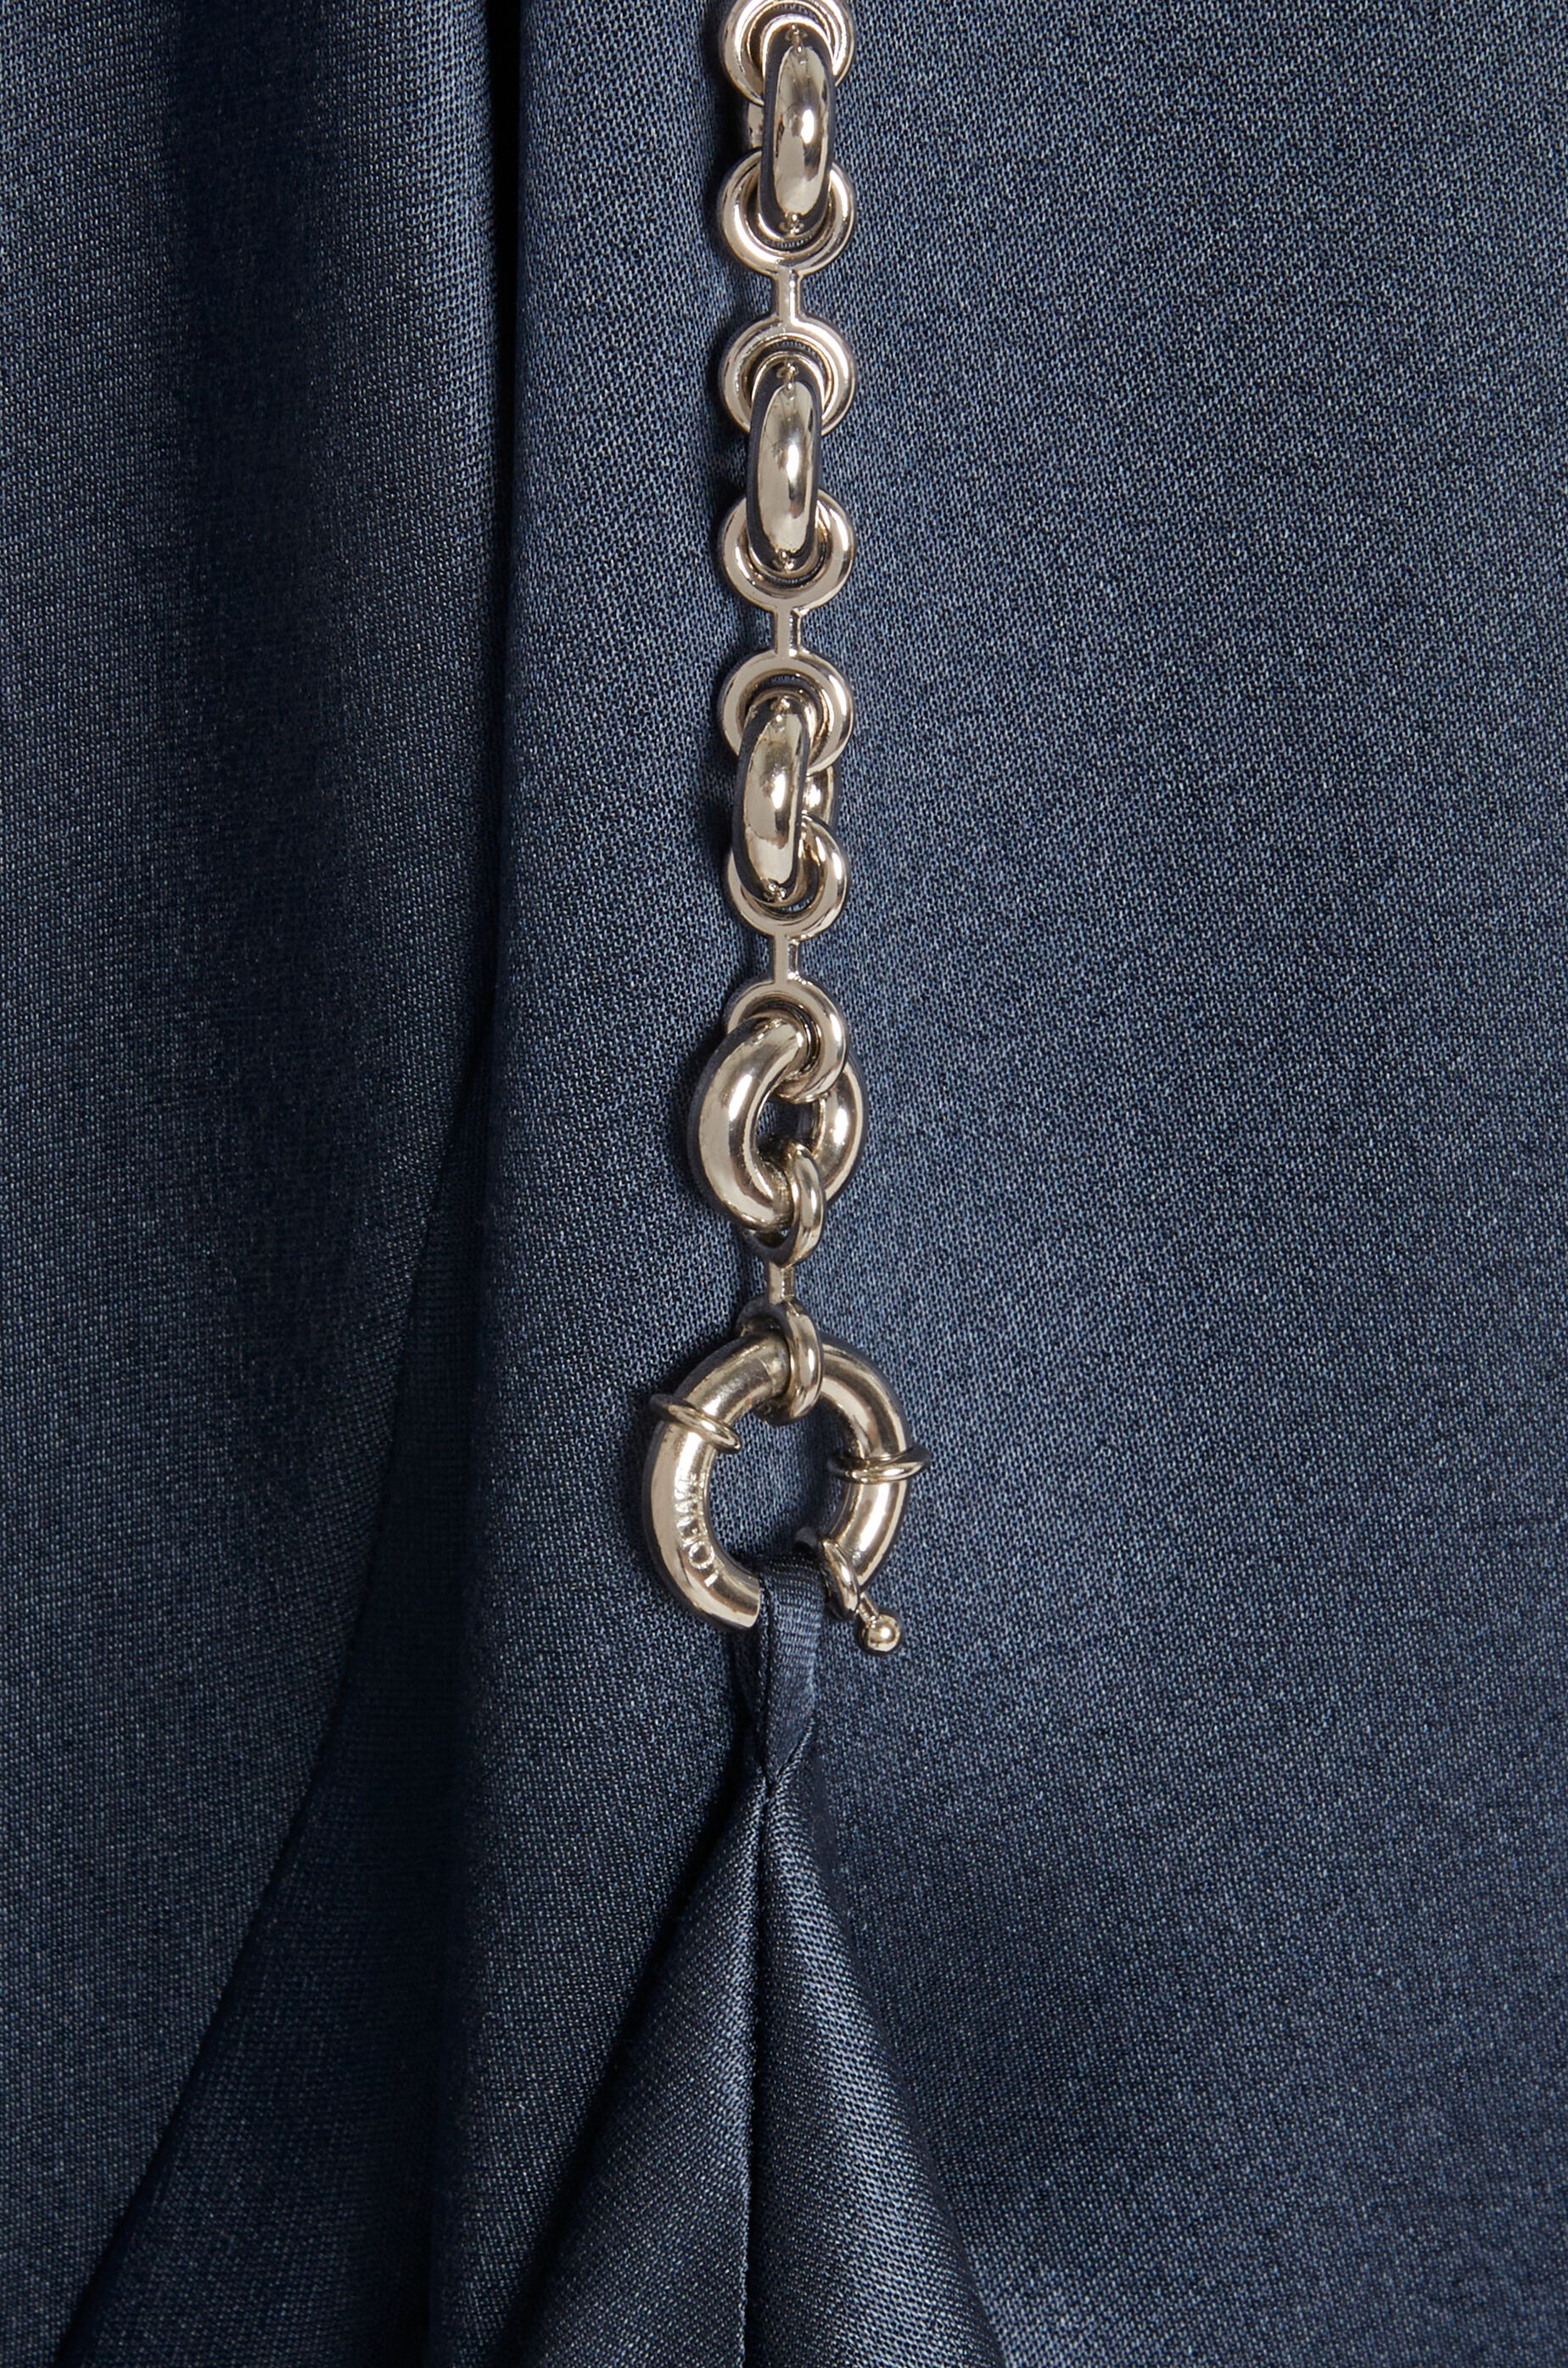 Chain shirt dress in silk - 3